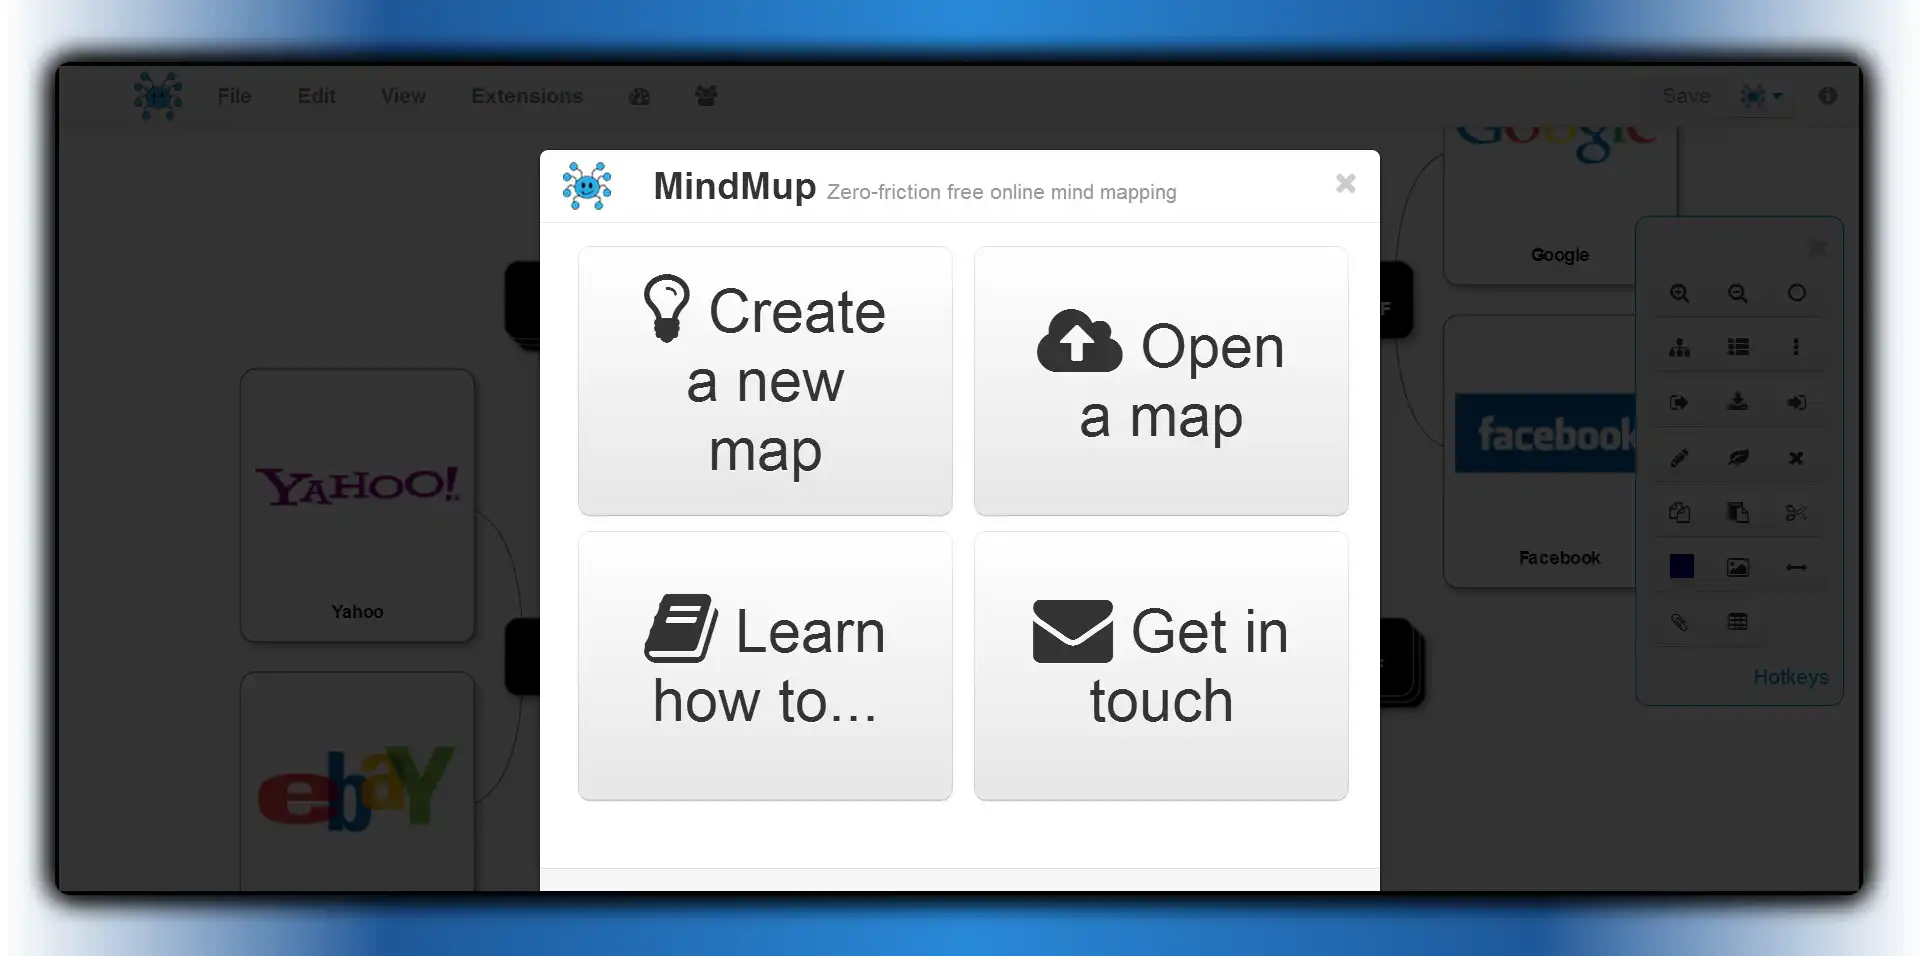 下载网络工具或网络应用程序免费在线思维导图 - MindMup